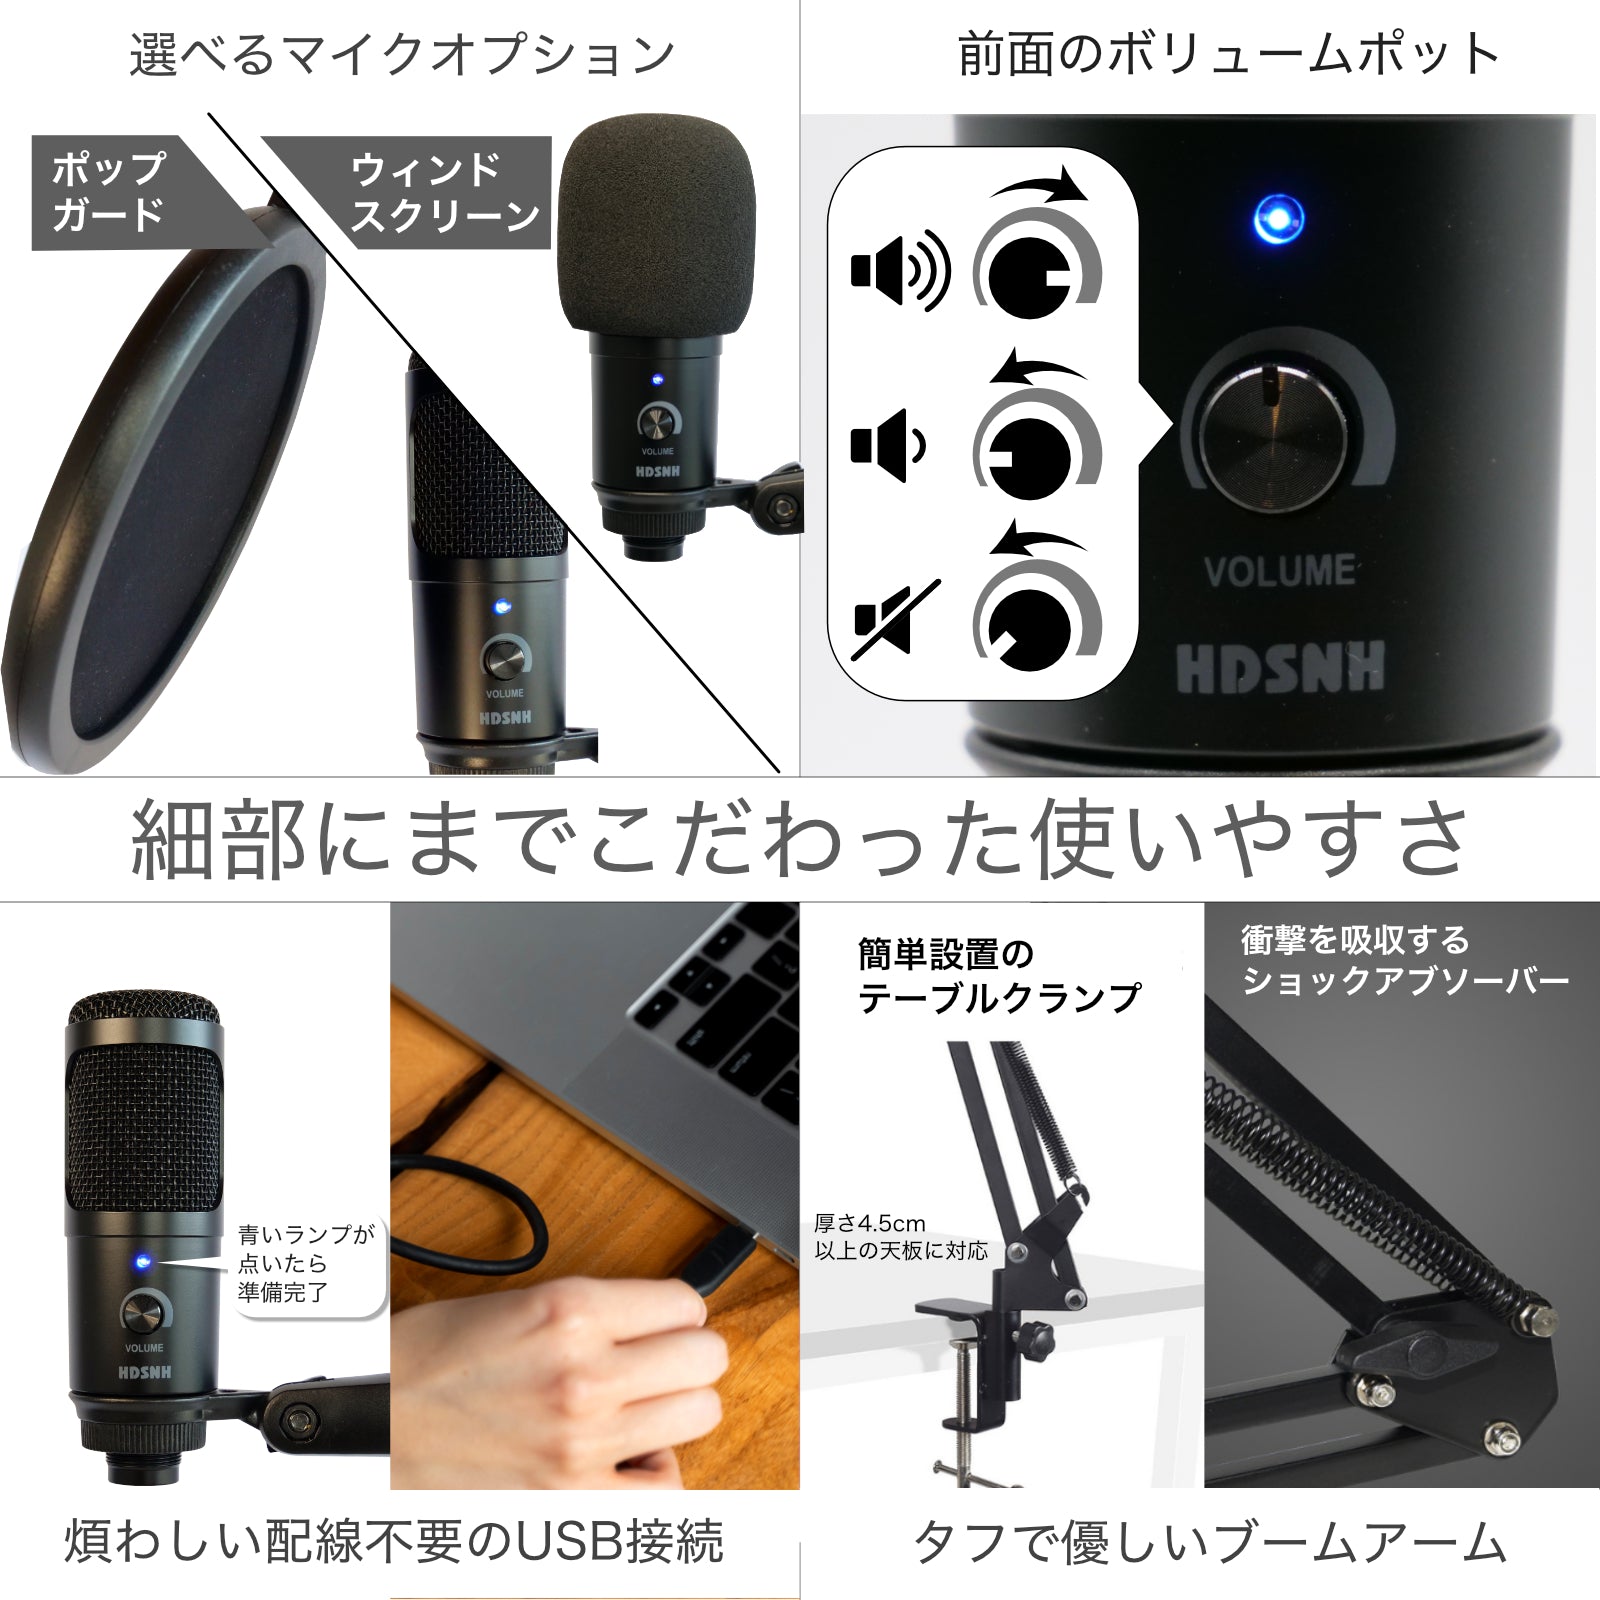 New】USBコンデンサーマイクセット – fujirec